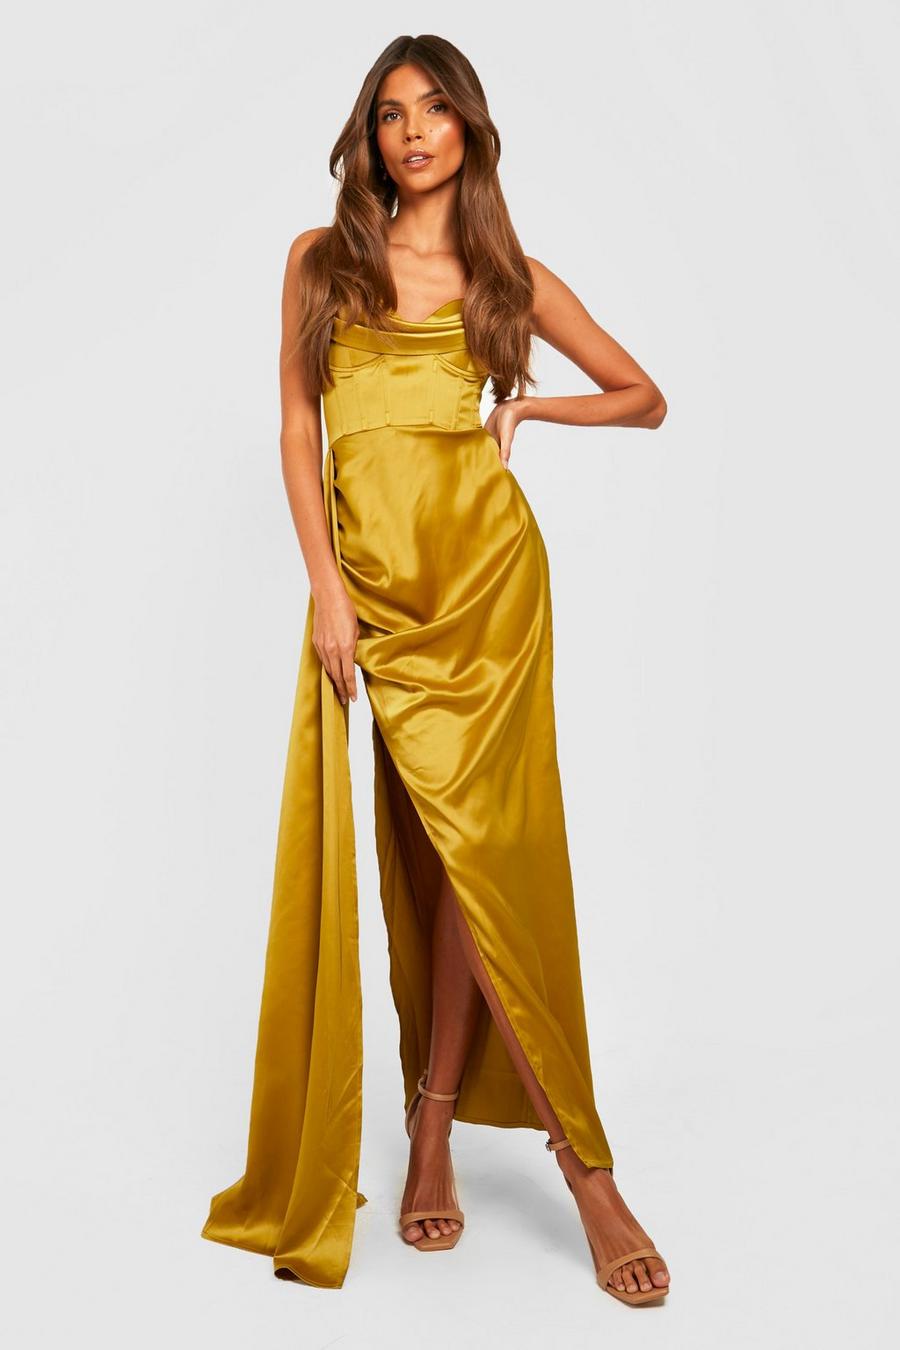 ירקרק giallo שמלת מקסי מסאטן עם מחוך וכתף חשופה